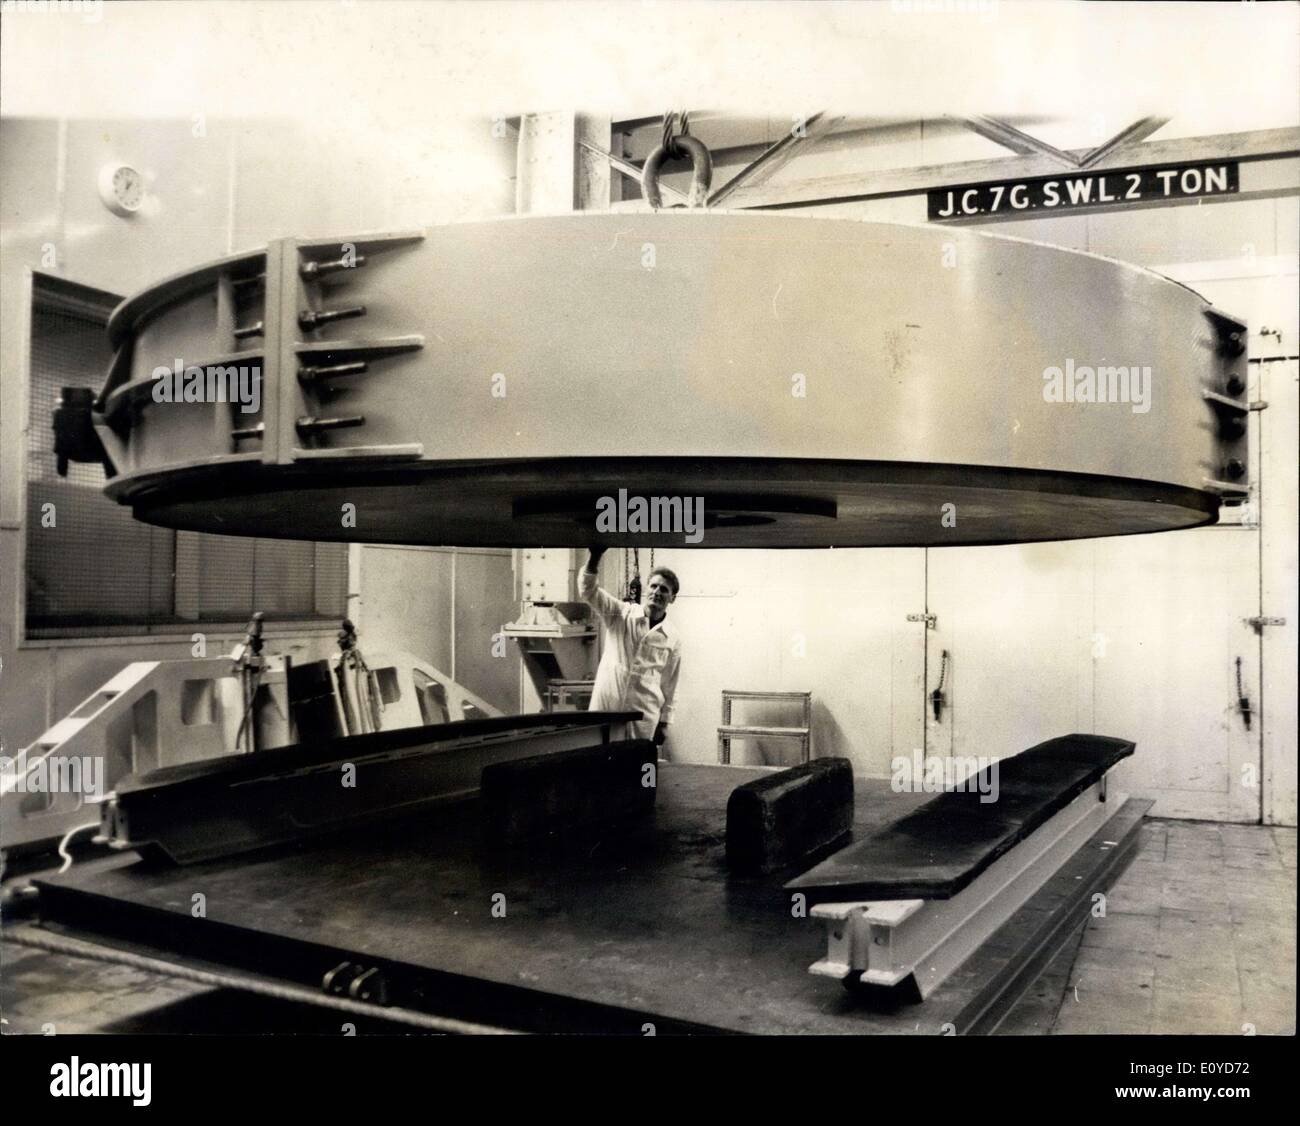 10 dicembre 1969 - 20 Ton Telescope Mirror del valore di un milione arriva tra lucidare a Newcastle : Il più grande pezzo di vetro mai importato nel Regno unito, un telescopio da 20 tonnellate, è arrivato alle opere di Grubb Parsons a Newcastle upon Tyne per un'operazione di levigatura e lucidatura di diciotto mesi. Il nuovo specchio da 155.5 pollici realizzato in vetro a espansione zero - materiale ceramico chiamato Cervit' sviluppato da Owens Illinois U.S.A. è stato fuso a Toledo, Ohio, nell'aprile di quest'anno Foto Stock